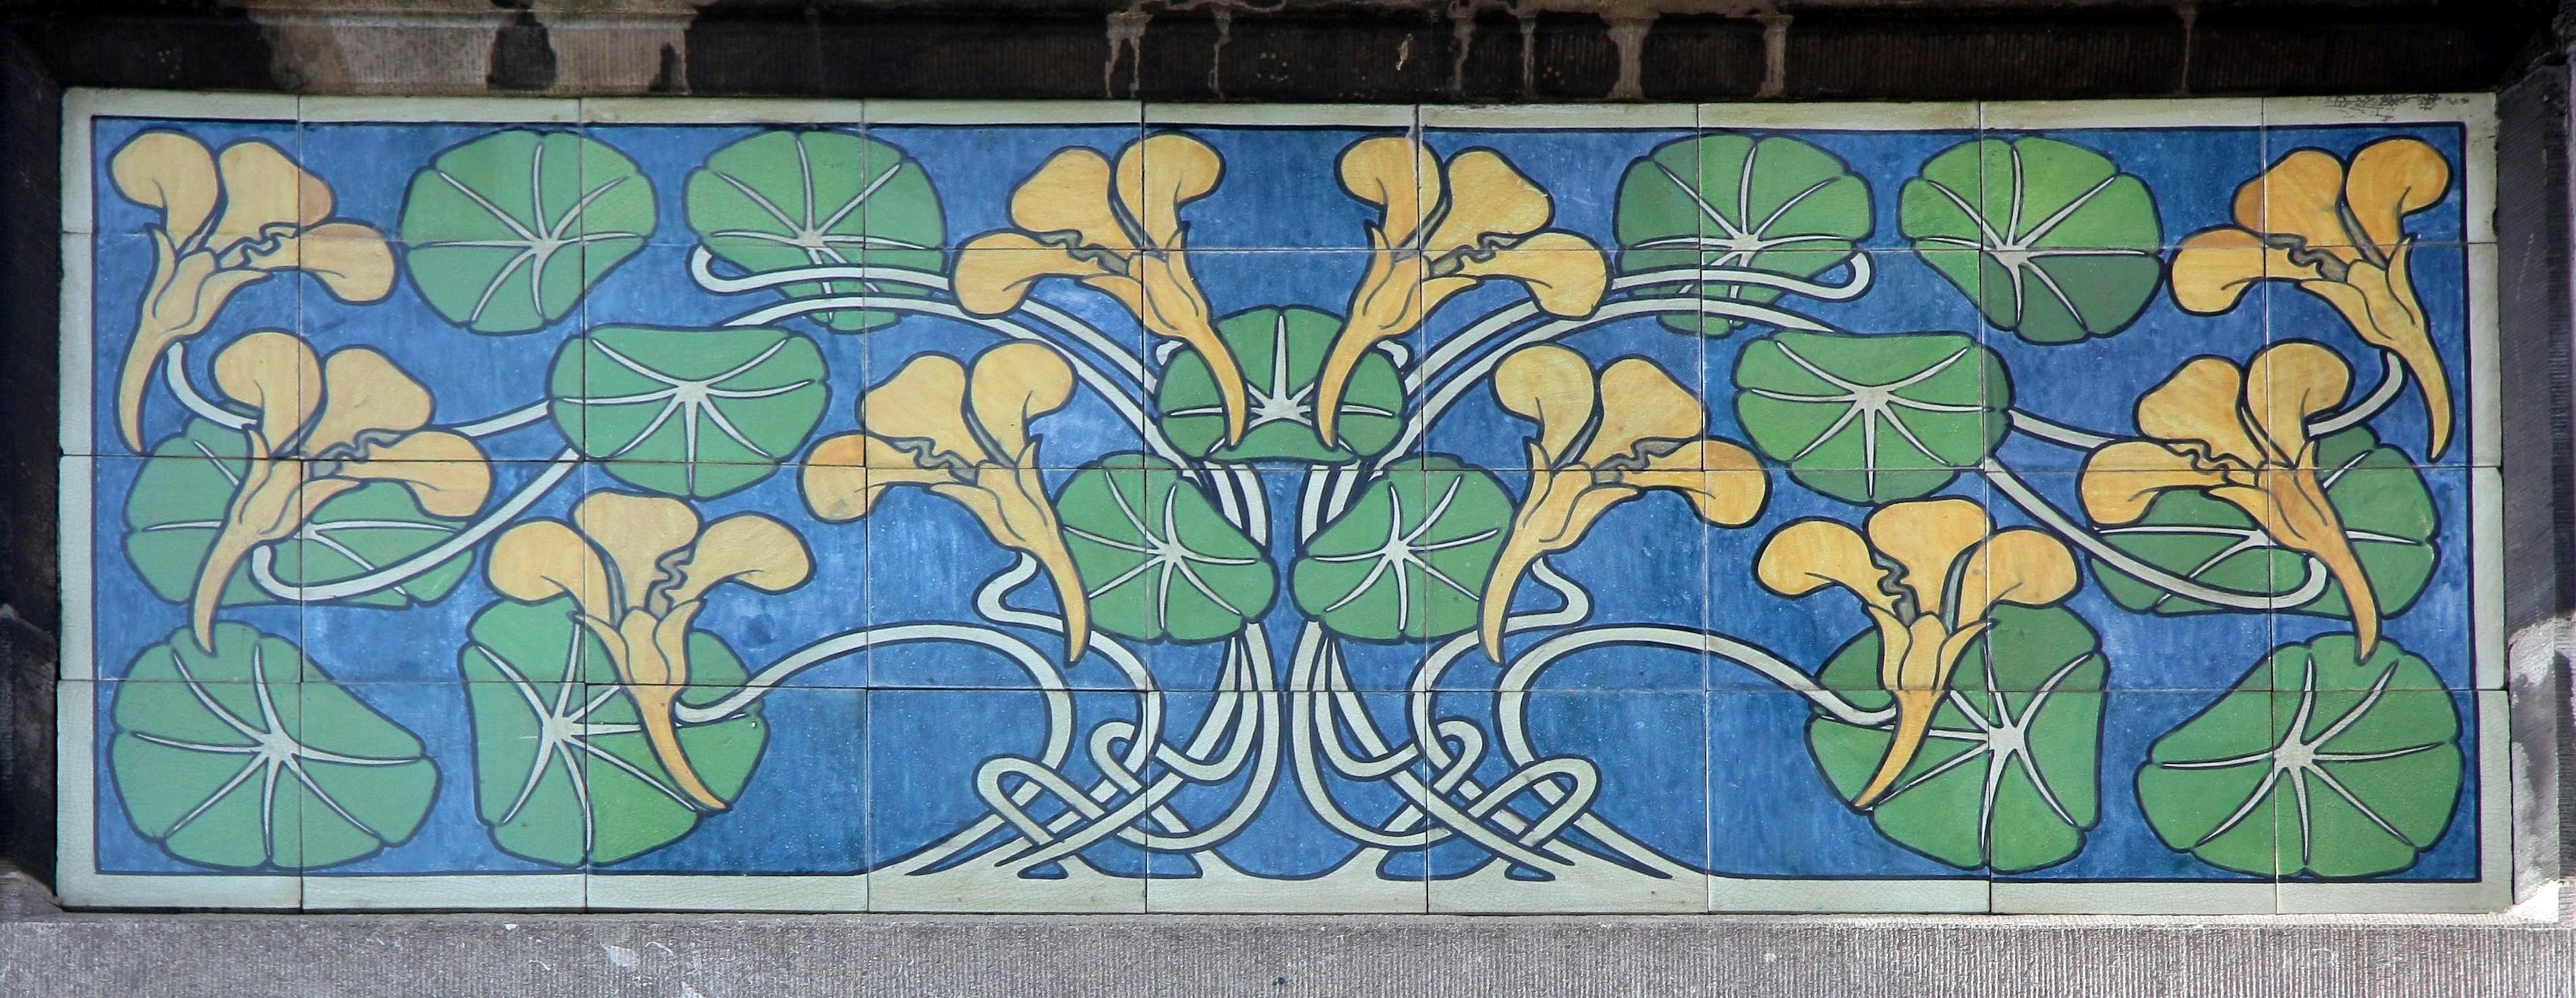 Amsterdam art nouveau tile tableau